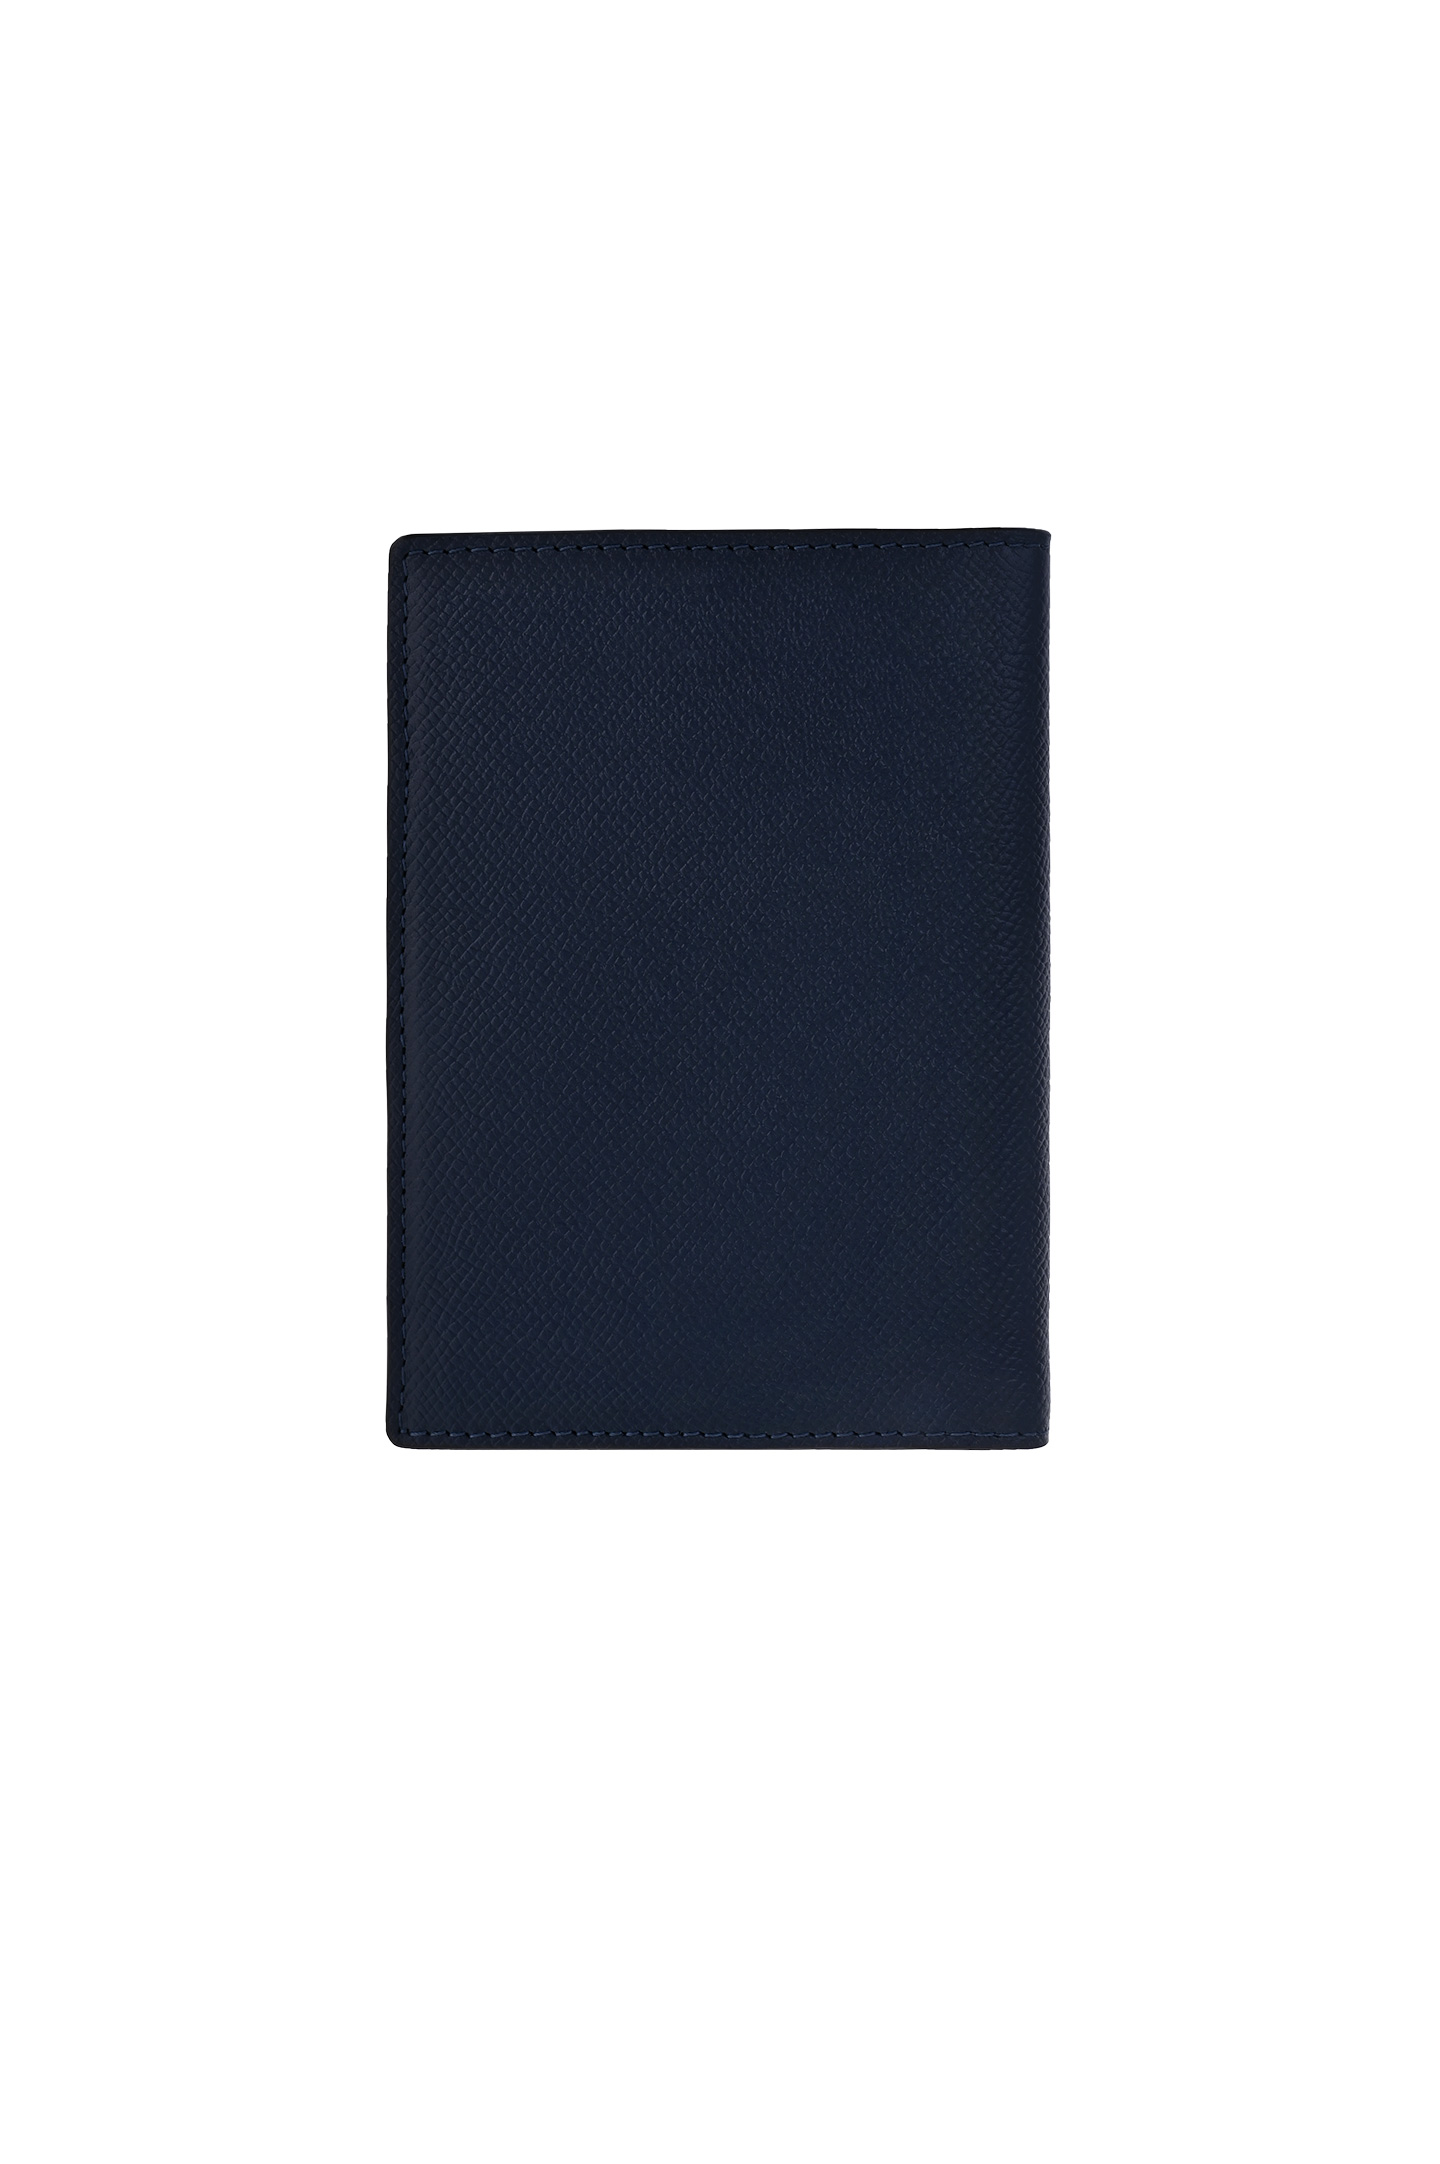 Обложка для паспорта SANTONI UFPPA2379FO-ANCFU78, цвет: Синий, Женский